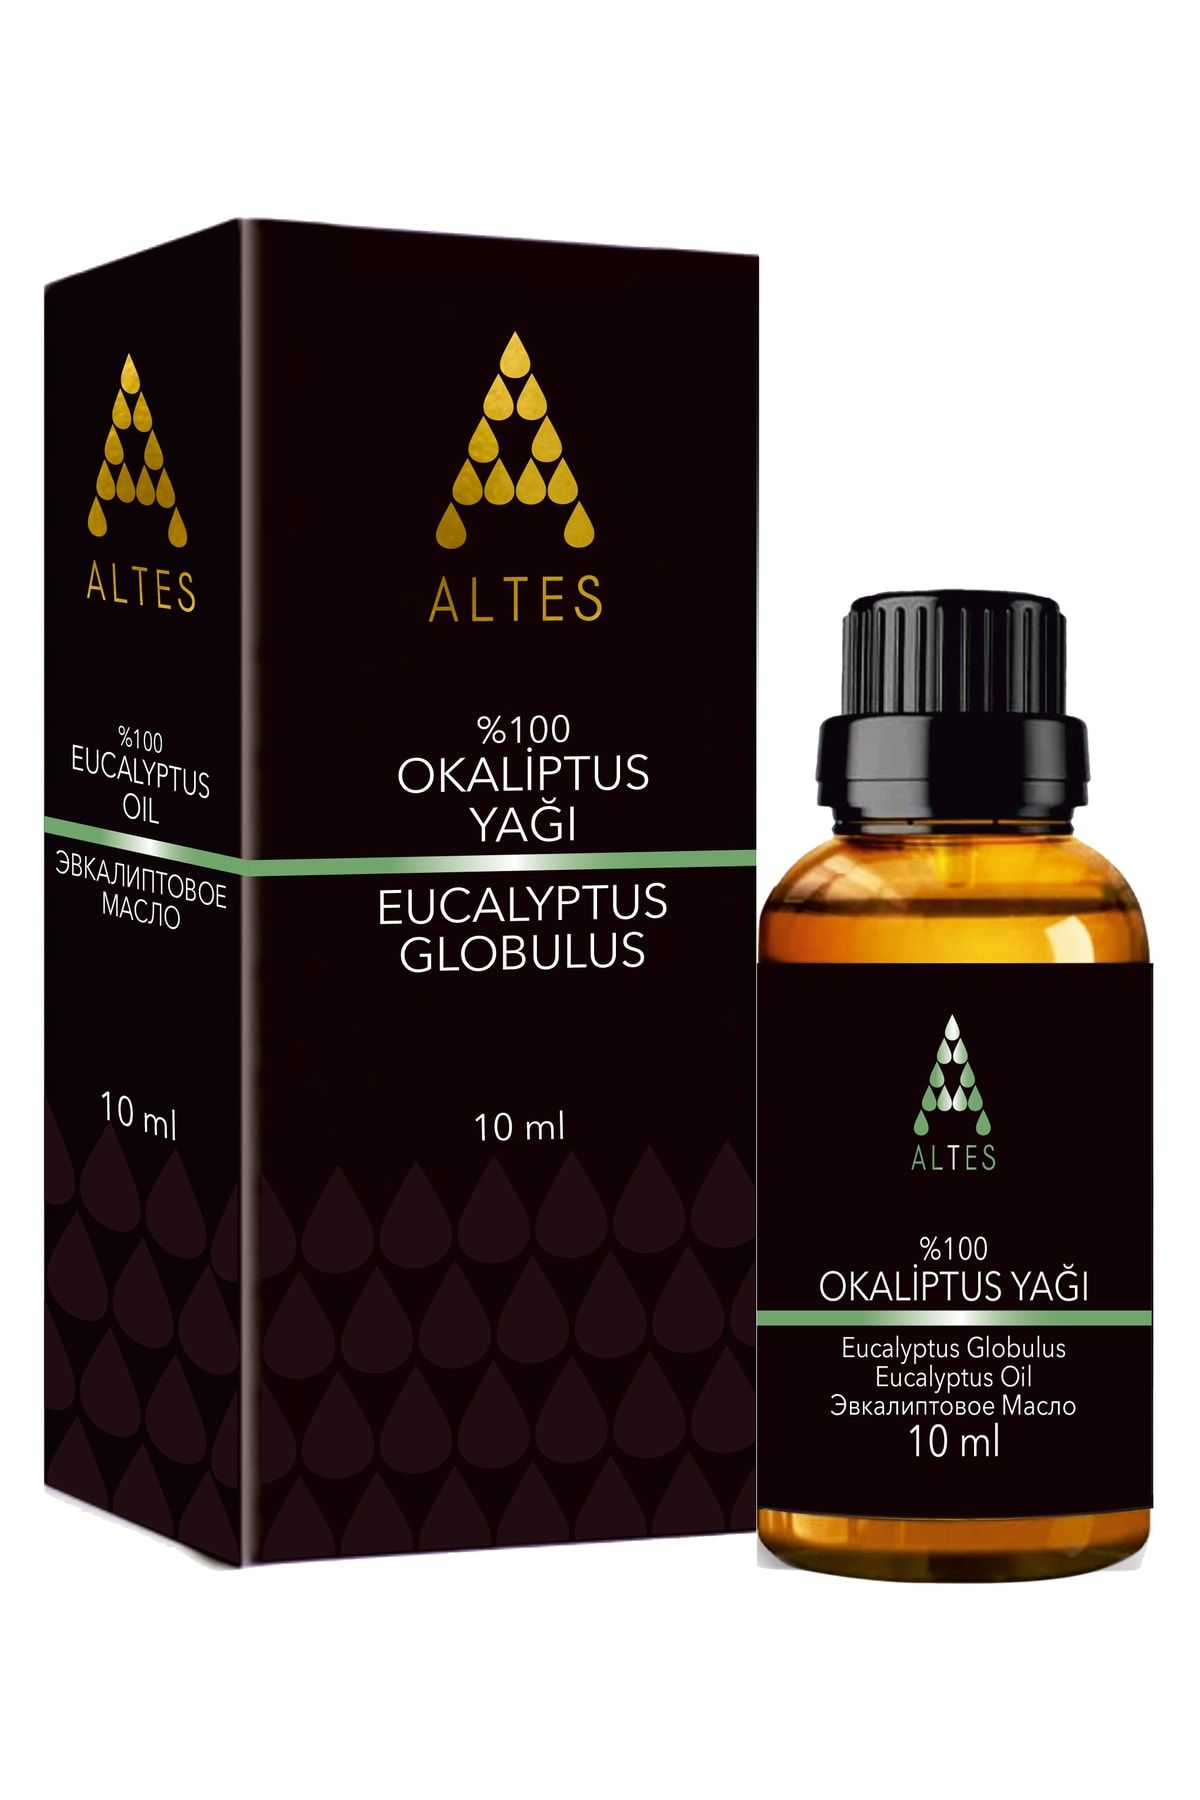 altes %100 Saf Okaliptus Uçucu Yağı / Eucalyptus Oil / Eucalyptus Globulus 10ml Ym21ok0101